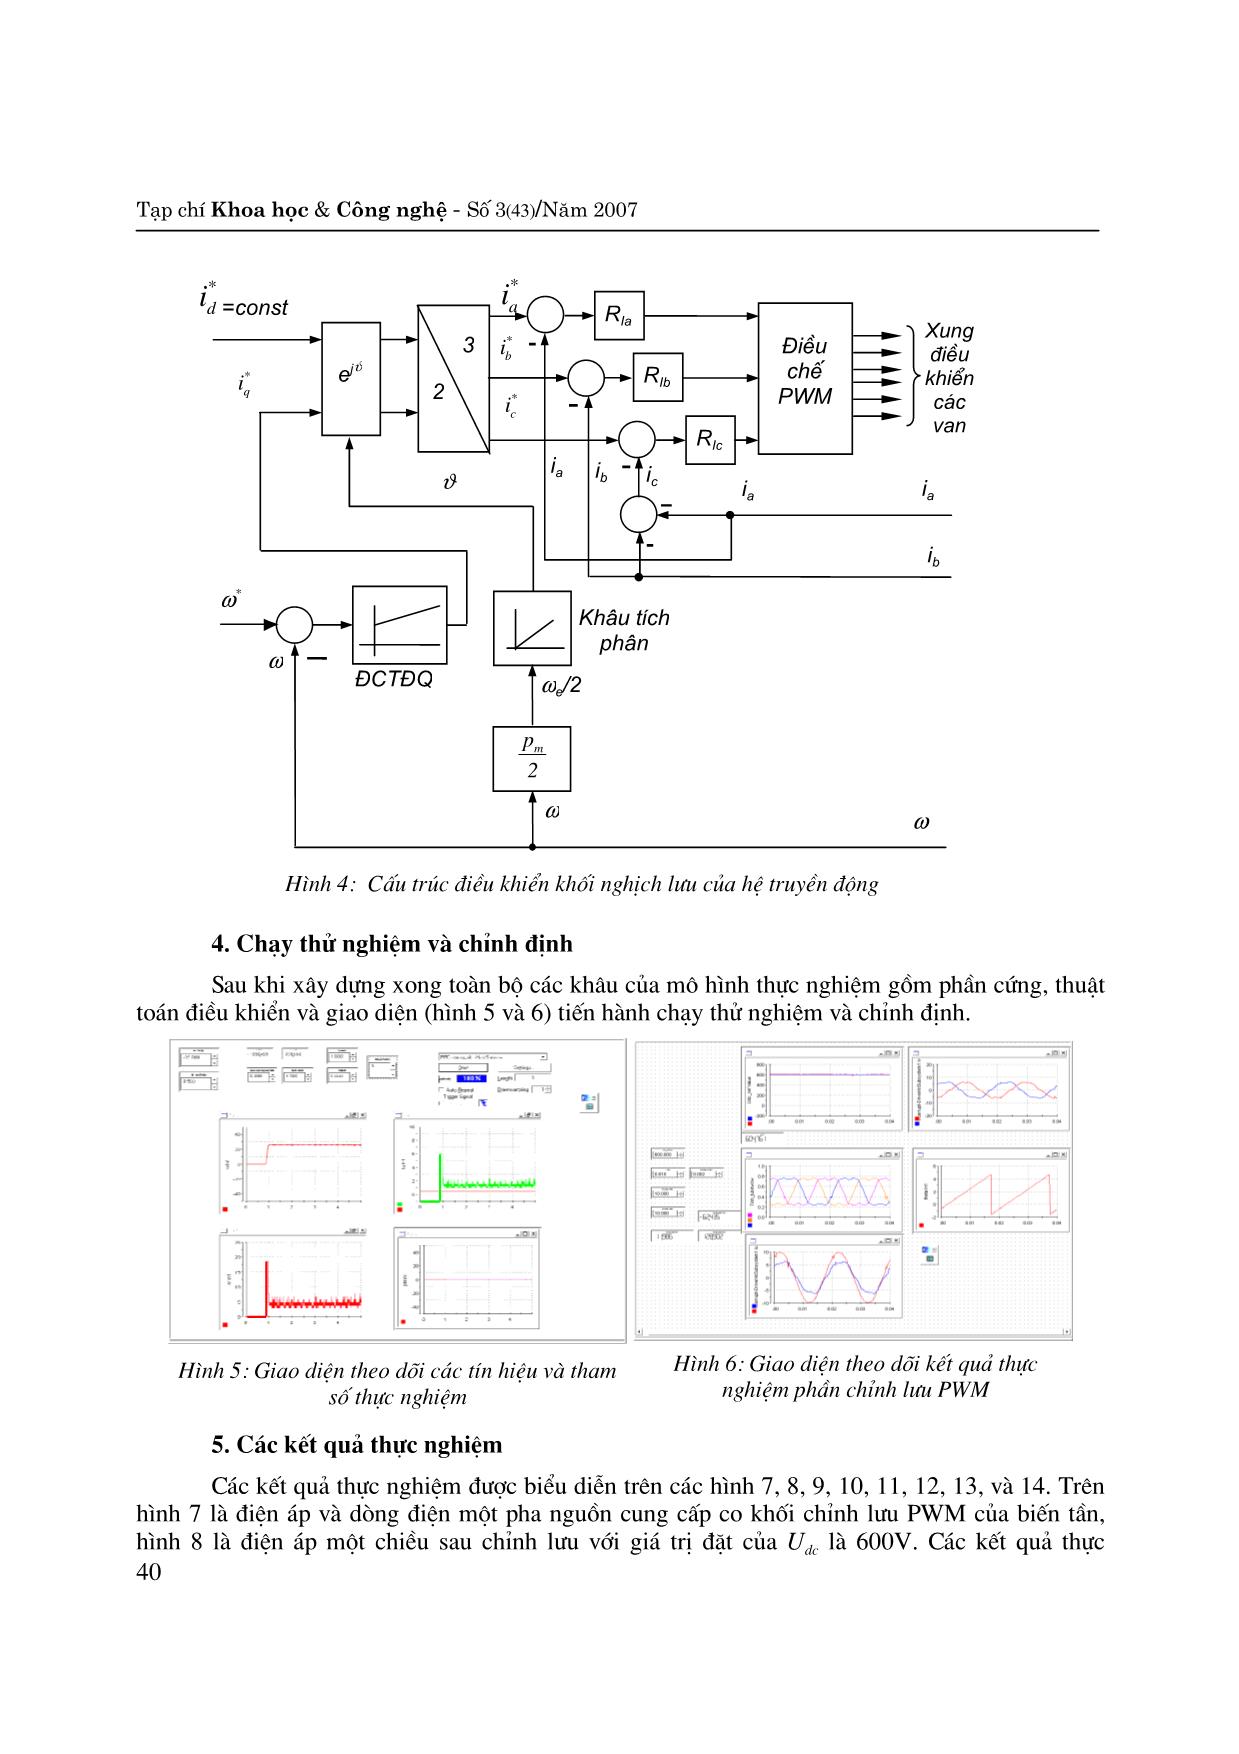 Nghiên cứu bằng thực nghiệm Hệ truyền động điện biến tần - động cơ đồng bộ kích từ nối tiếp trang 4